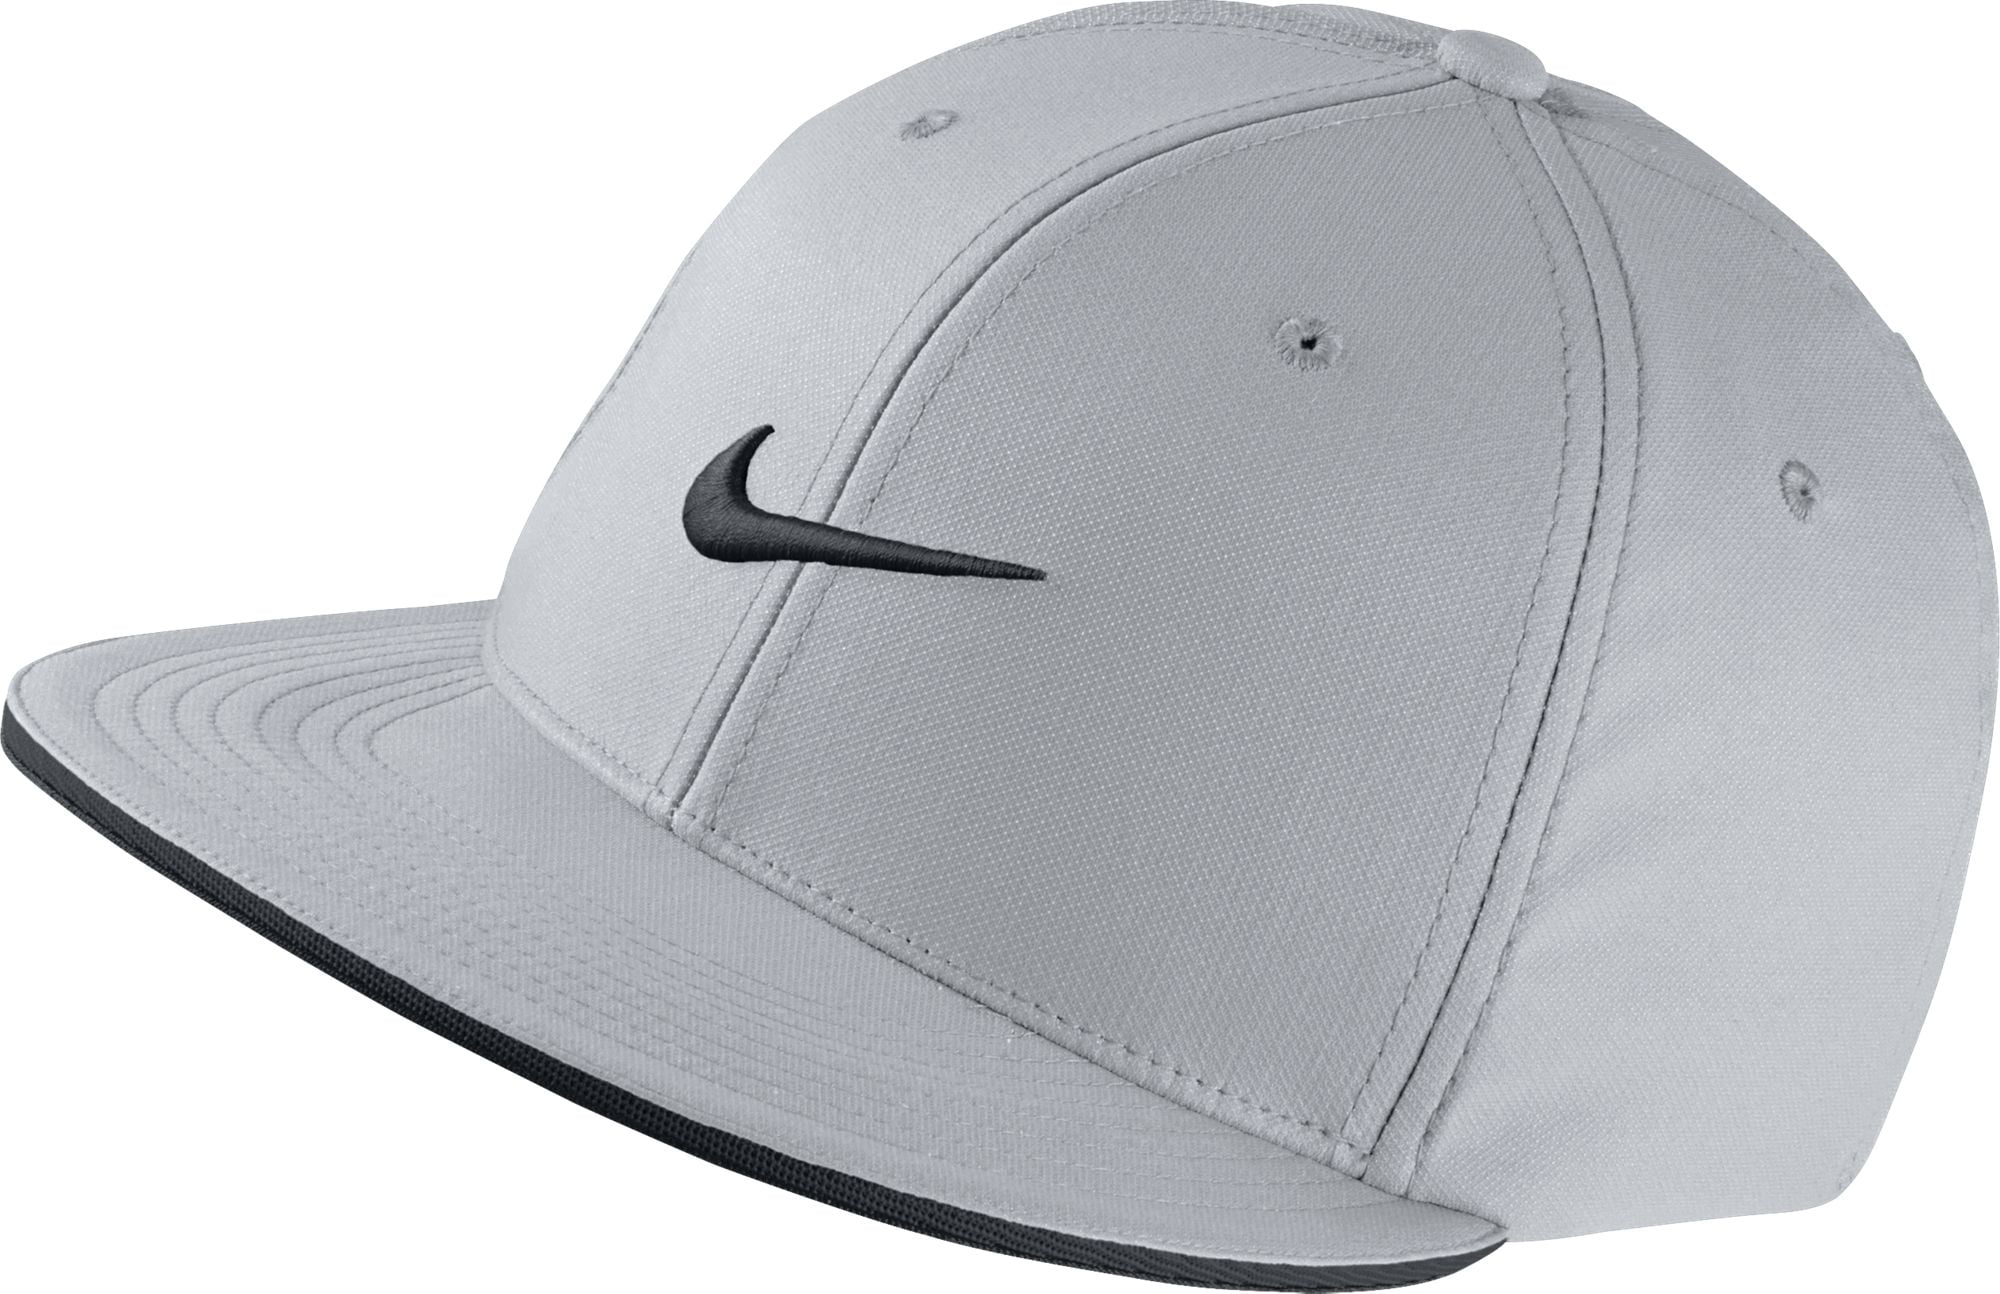 this Wings motif NEW Nike True Statement Wolf Gray Fitted Flatbill L/XL Hat/Cap - Walmart.com